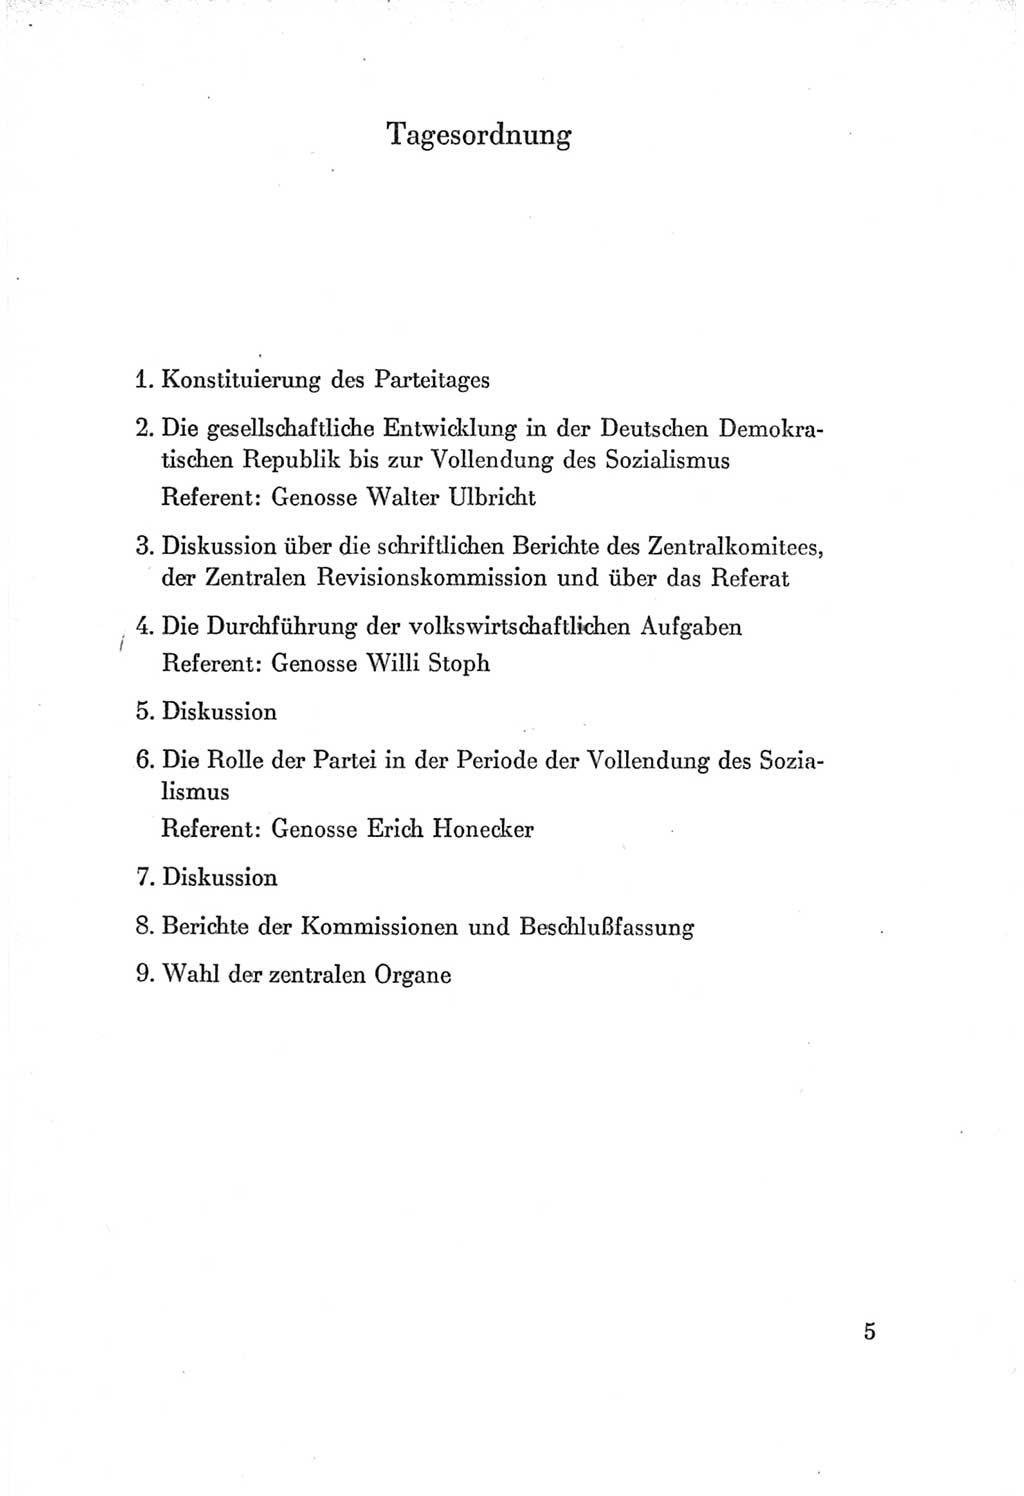 Protokoll der Verhandlungen des Ⅶ. Parteitages der Sozialistischen Einheitspartei Deutschlands (SED) [Deutsche Demokratische Republik (DDR)] 1967, Band Ⅰ, Seite 5 (Prot. Verh. Ⅶ. PT SED DDR 1967, Bd. Ⅰ, S. 5)